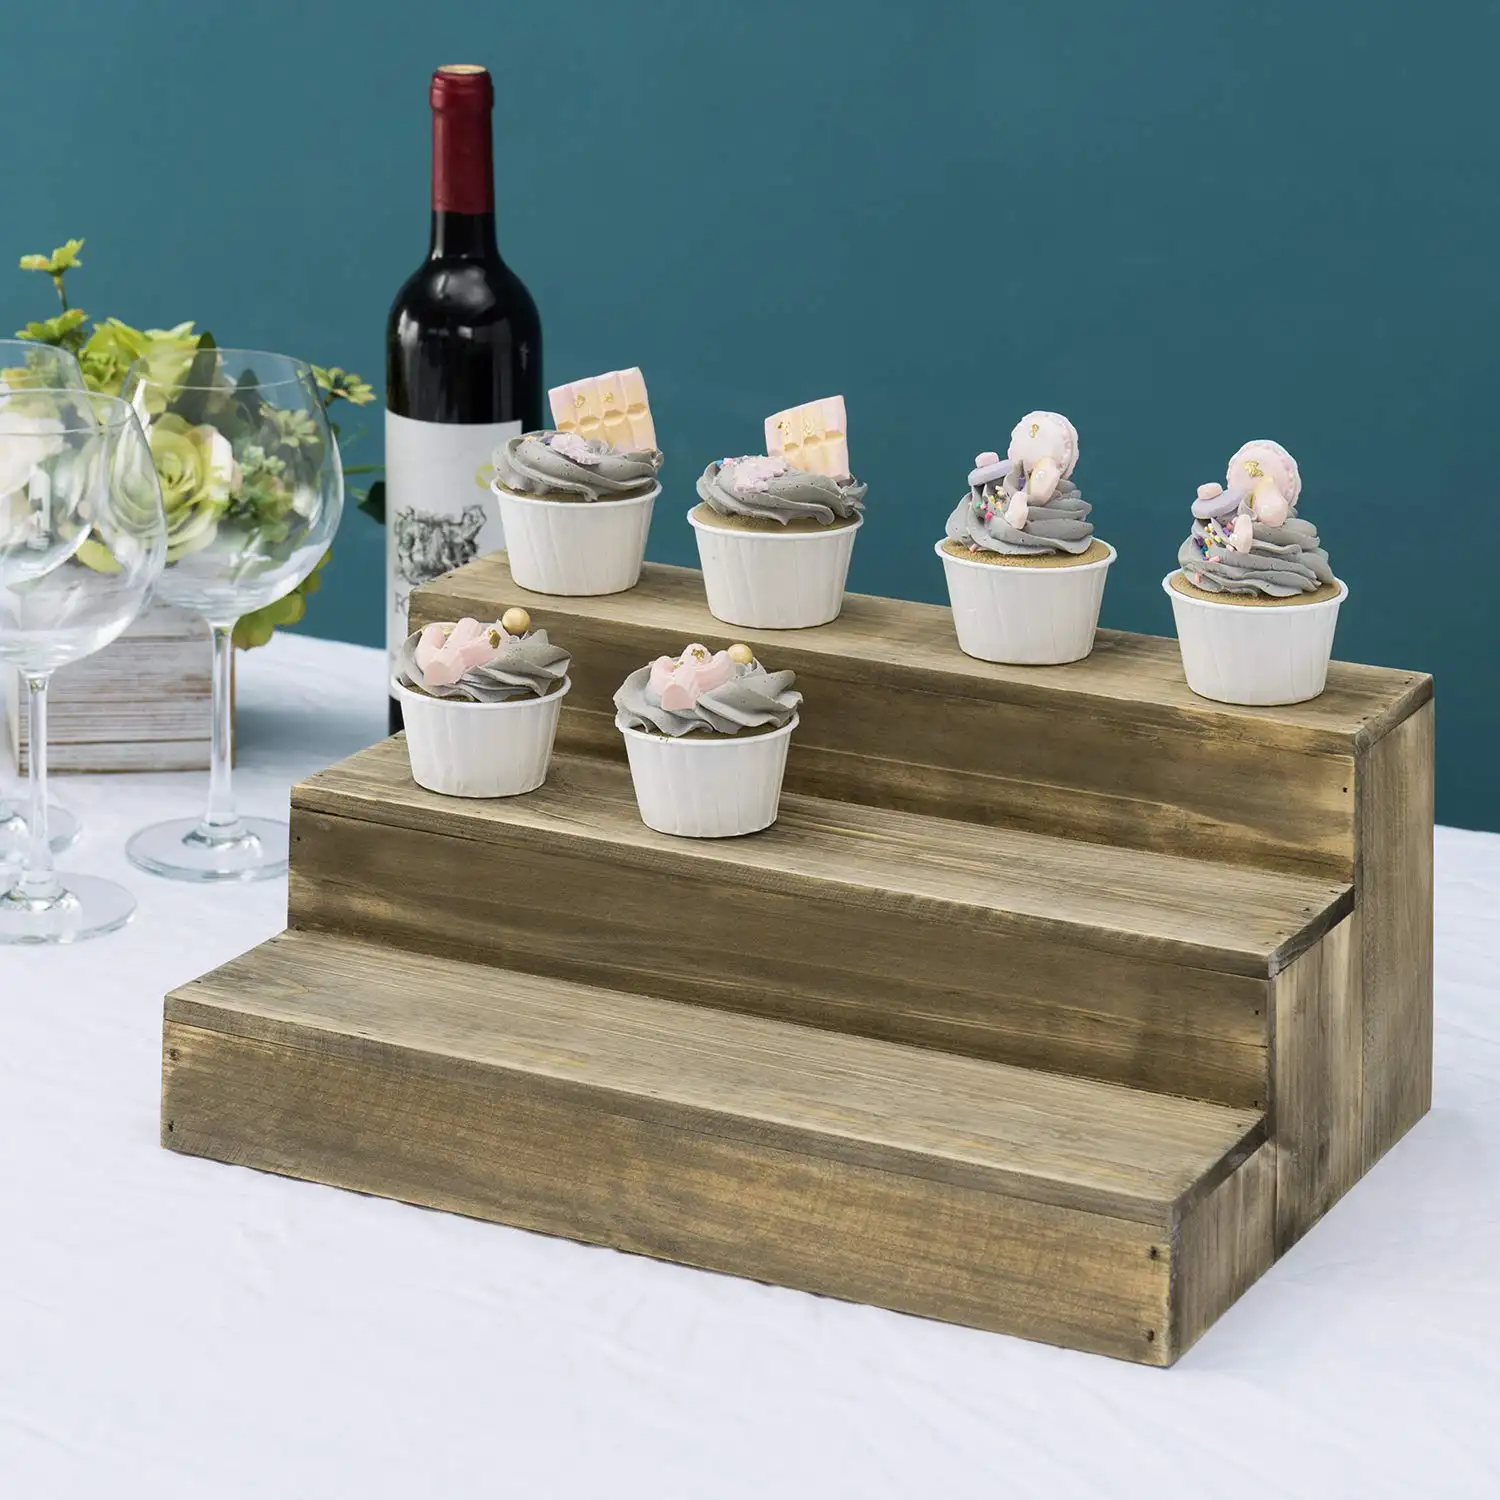 Schlussverkauf hölzerne Regalregale 3-Schichten braun wiederverwerteter Stil Holz Dessertständer Cupcake Riser Schau-Regal gewürzregale